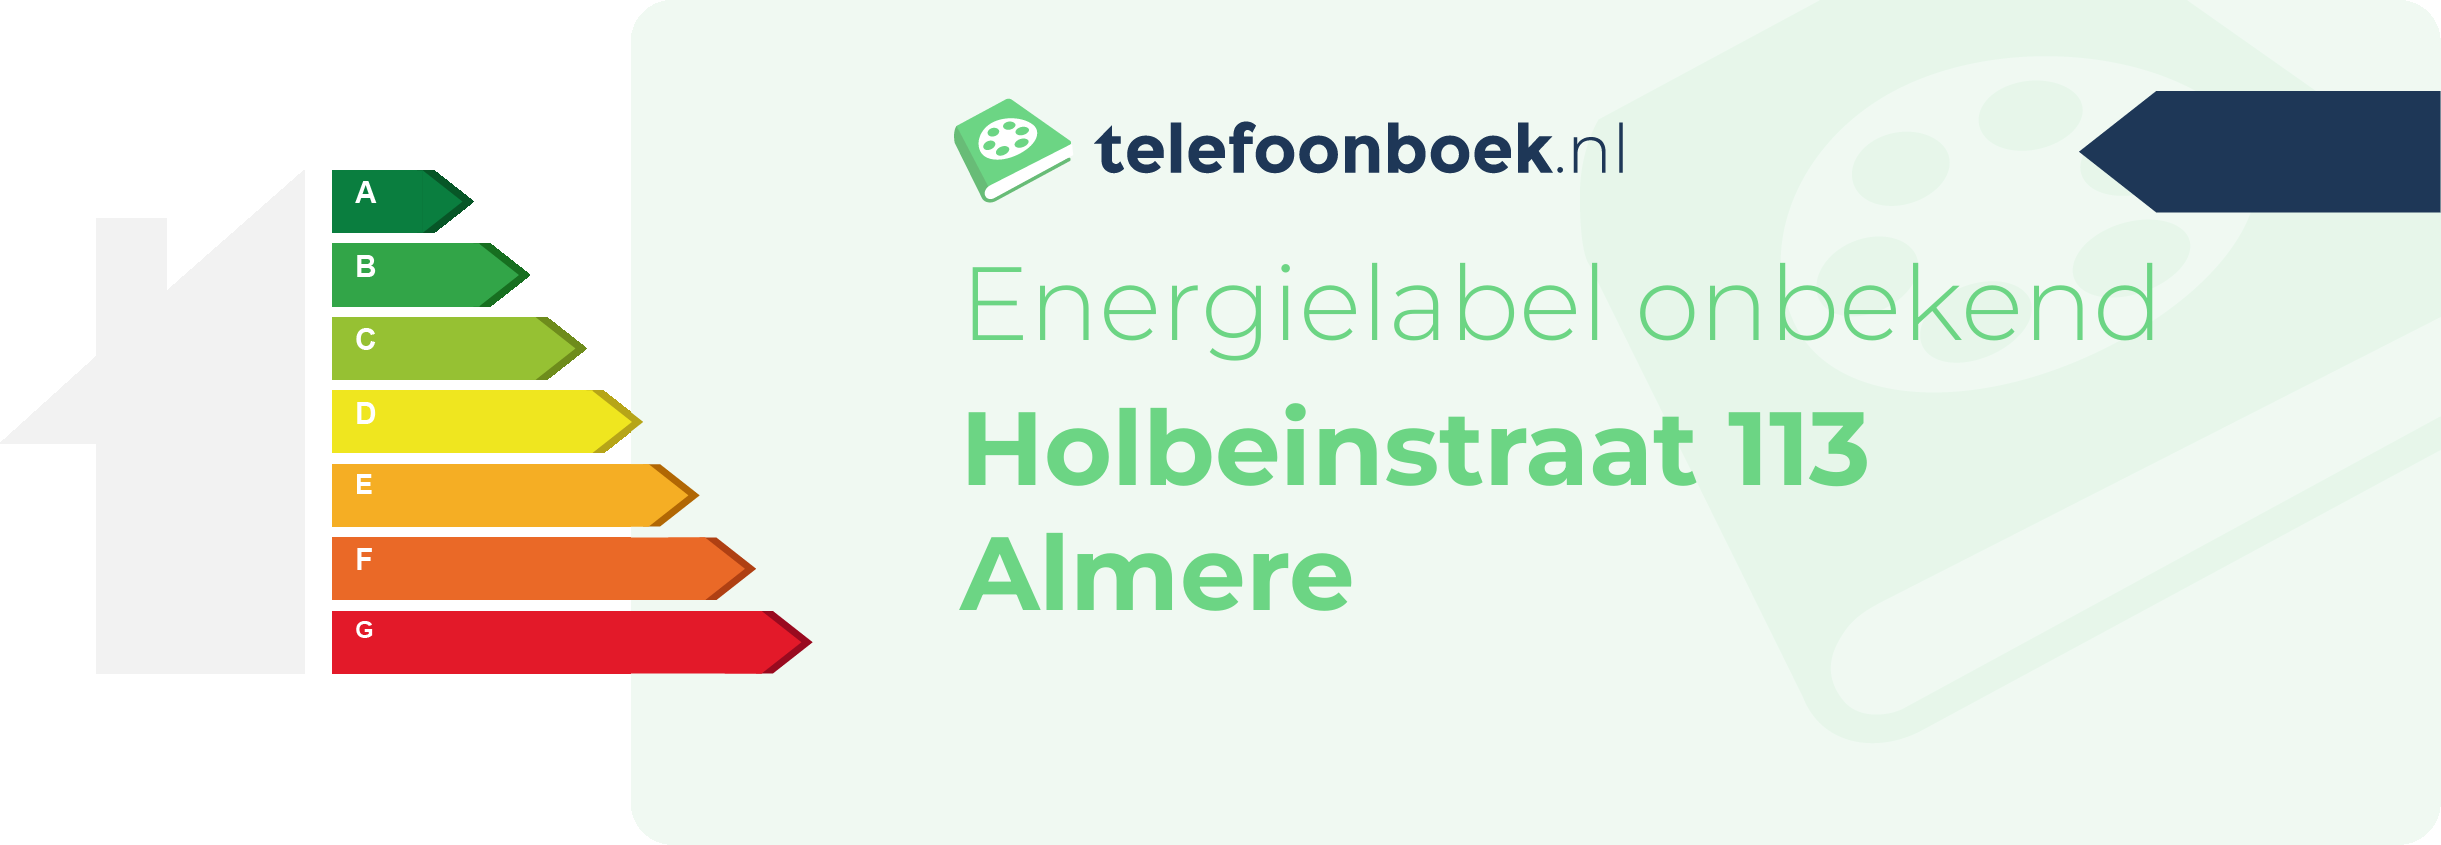 Energielabel Holbeinstraat 113 Almere